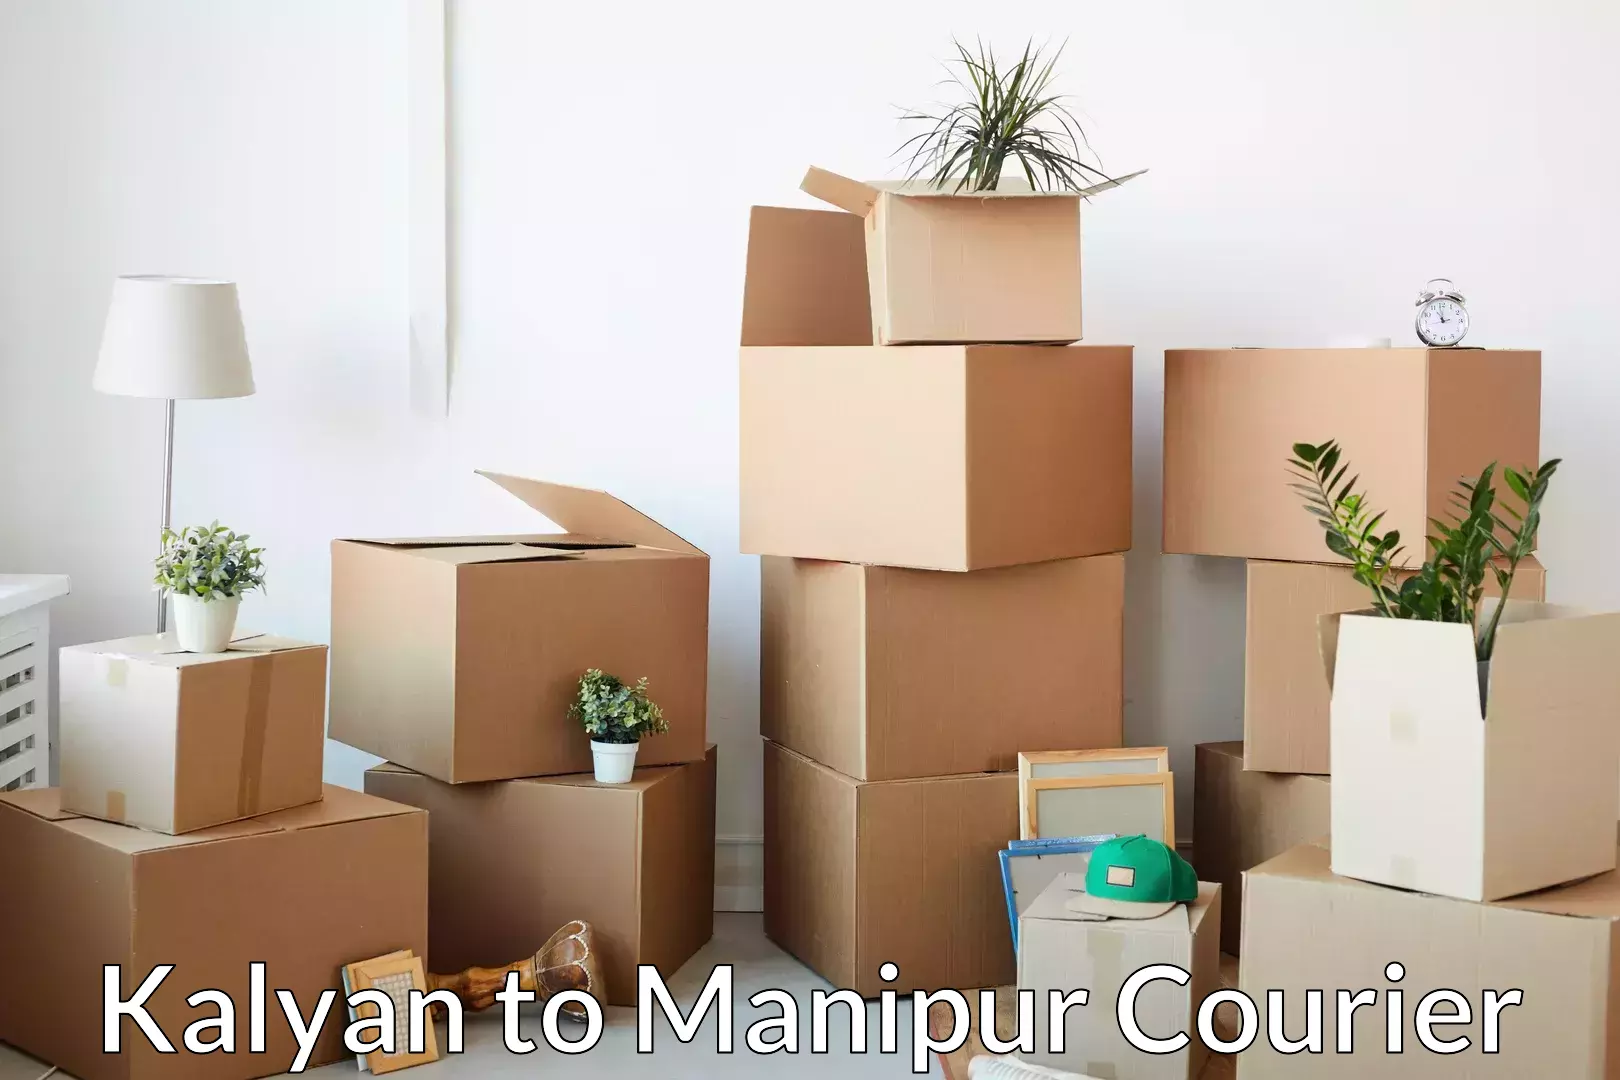 Home shifting experts Kalyan to Manipur